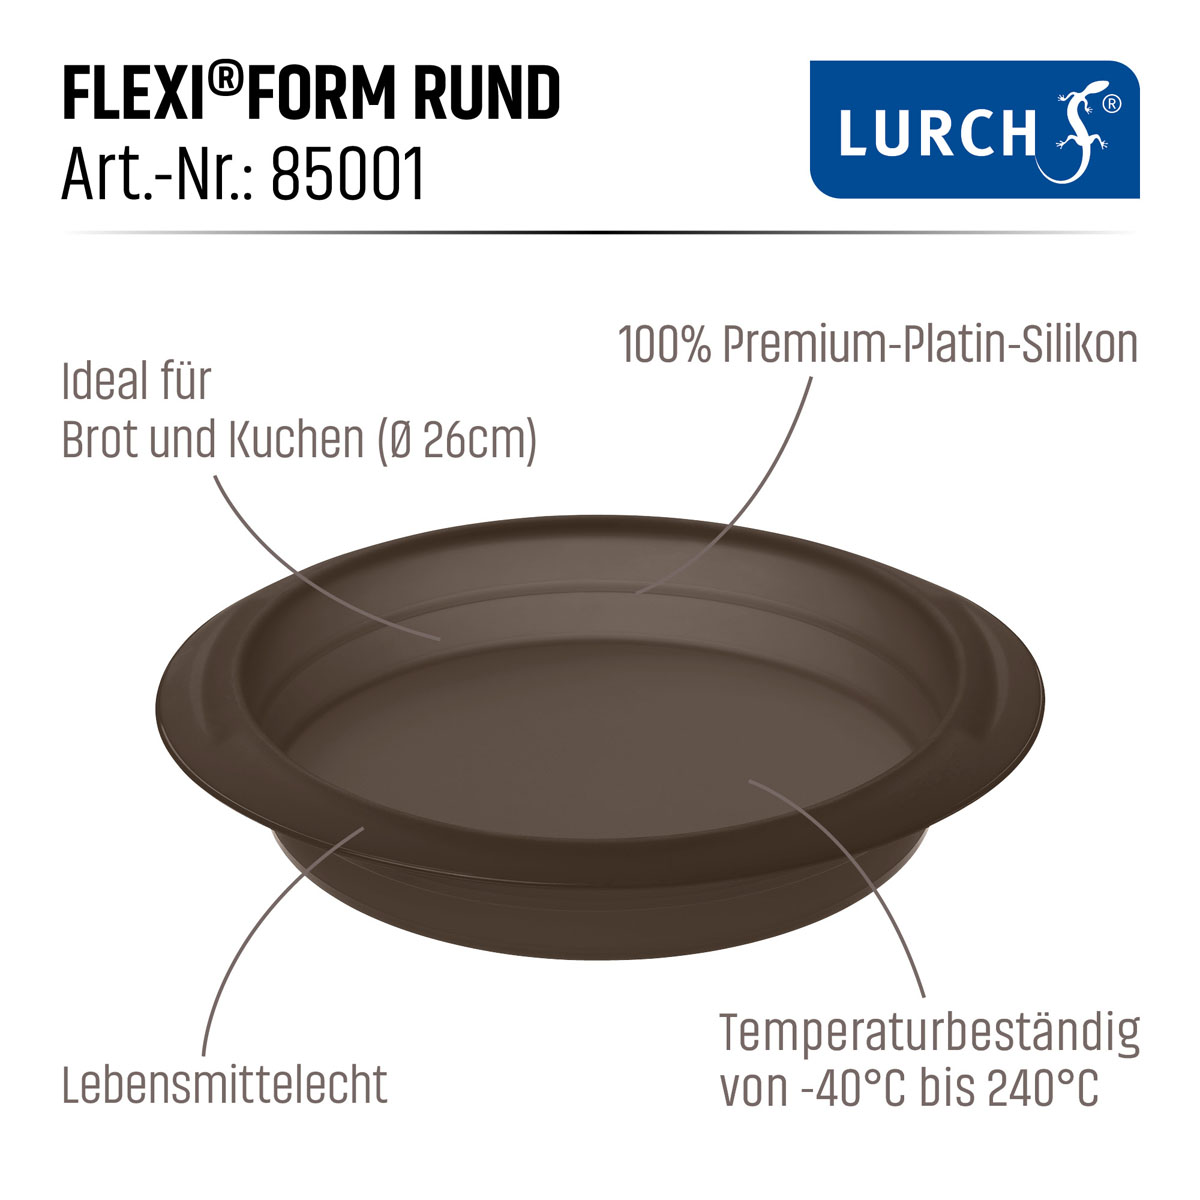 LURCH Flexiform Rund 26cm Premium-Platin-Silikon braun 